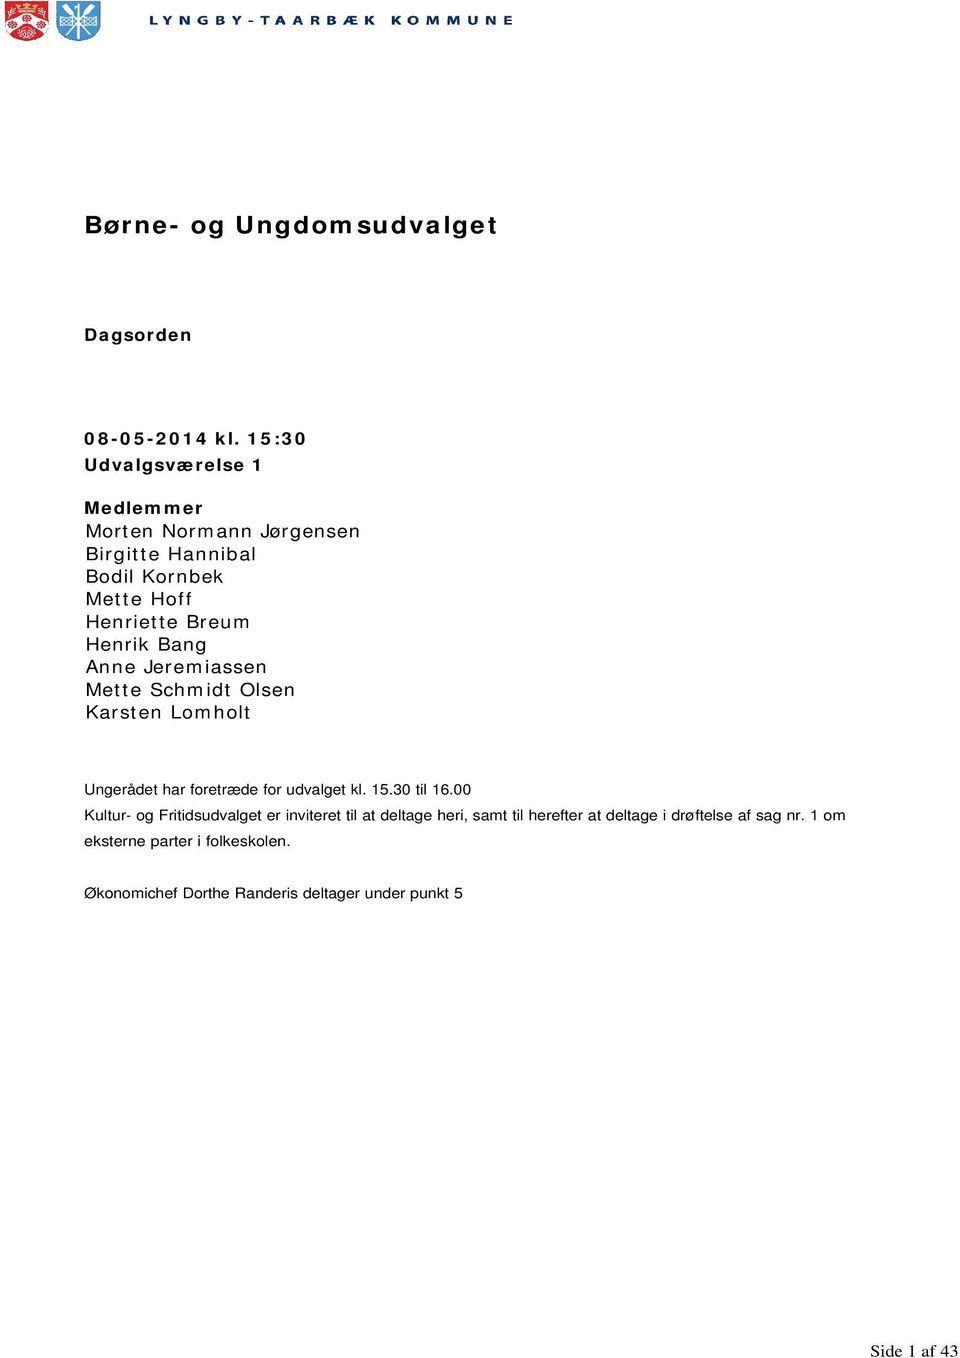 Bang Anne Jeremiassen Mette Schmidt Olsen Karsten Lomholt Ungerådet har foretræde for udvalget kl. 15.30 til 16.